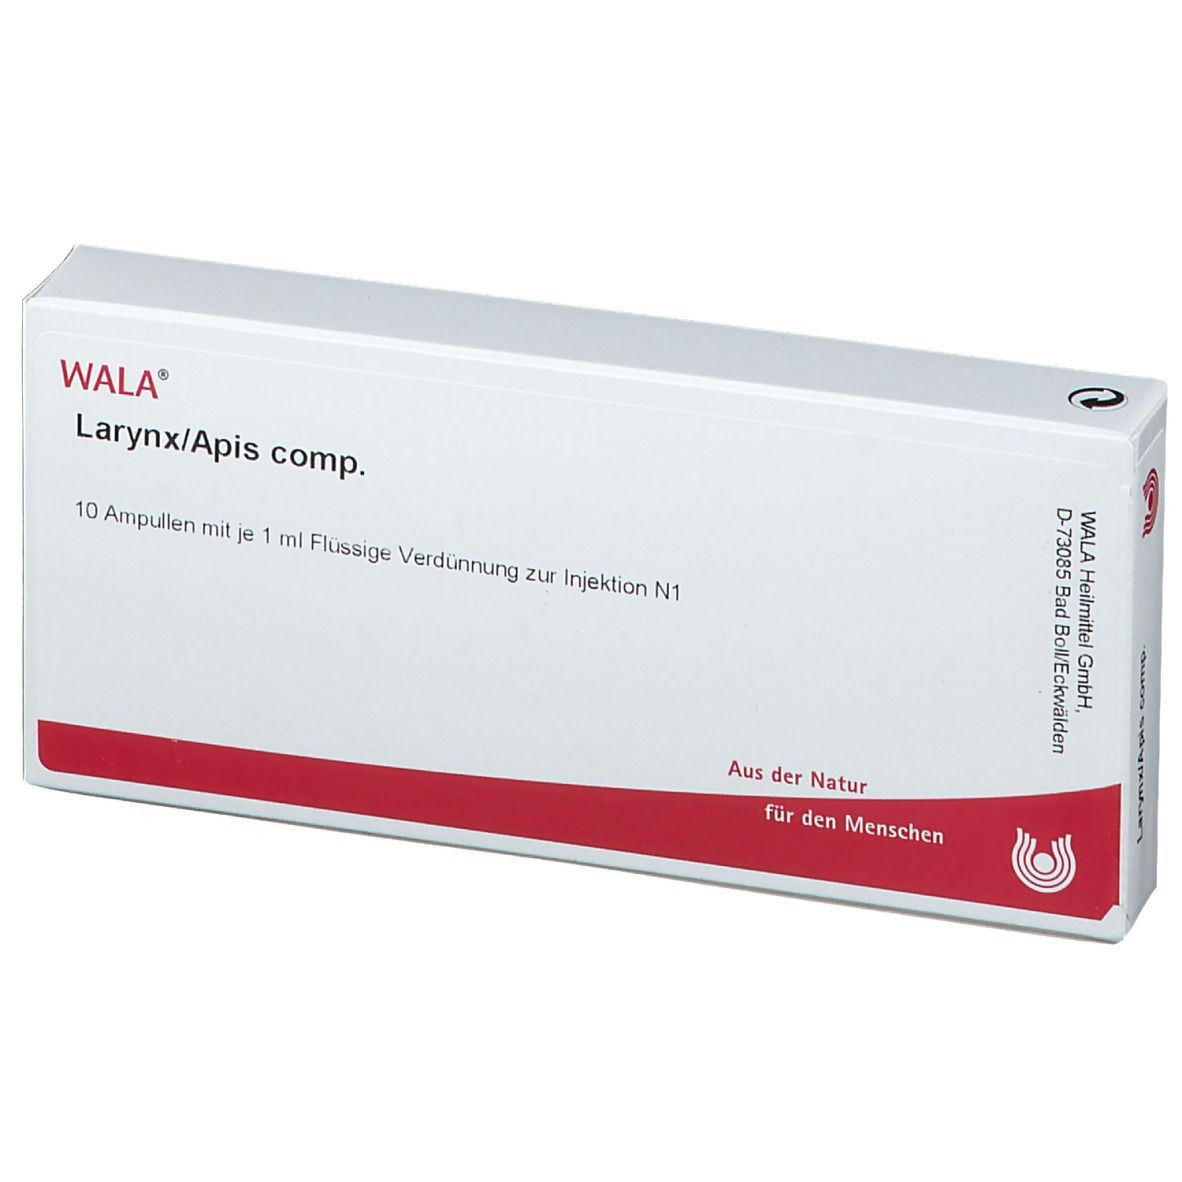 WALA® Larynx/Apis comp.